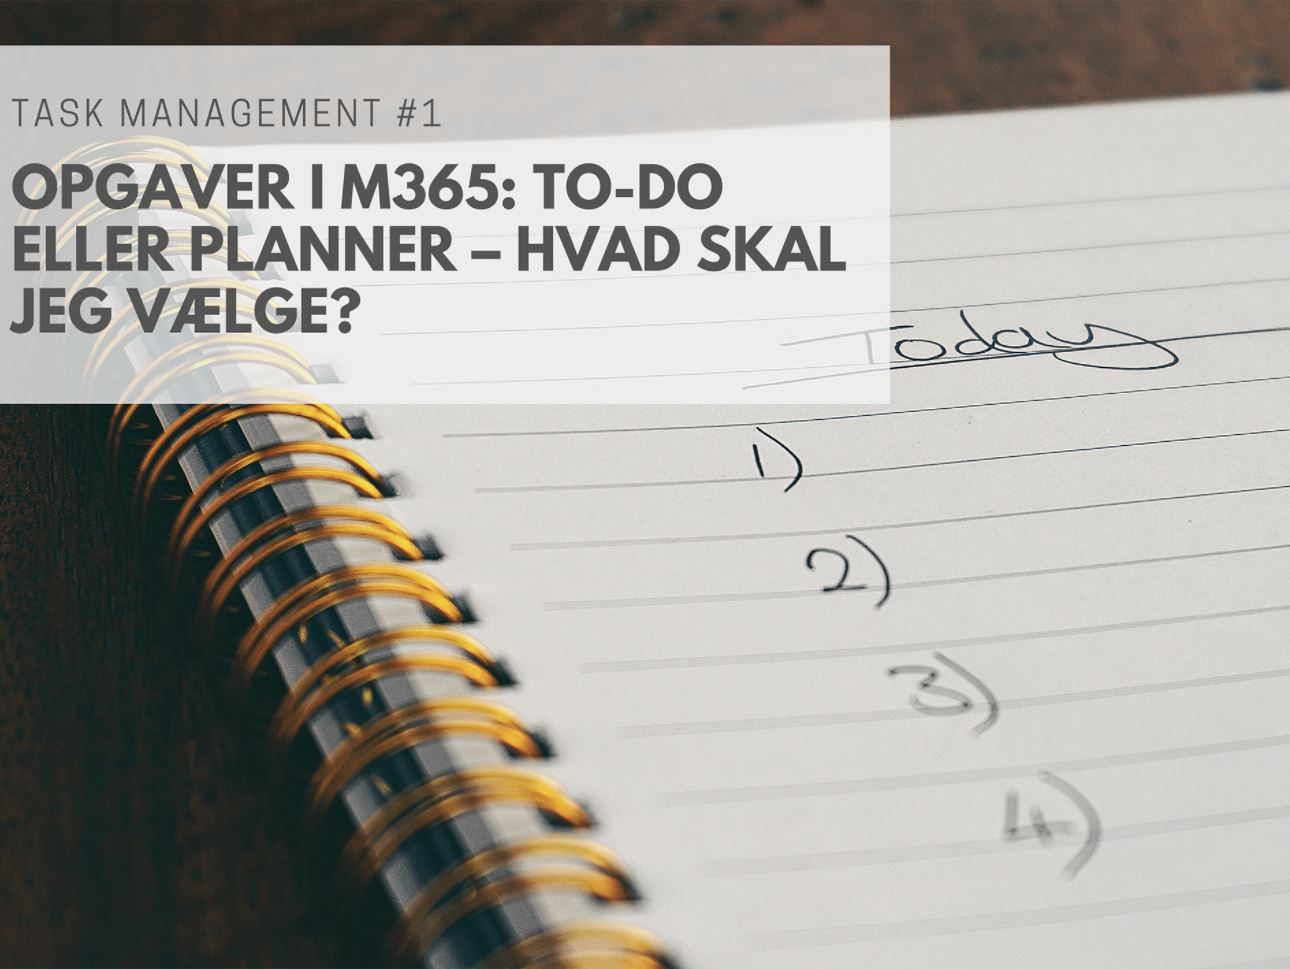 Task Management #1: Opgaver i M365: To-Do eller Planner – Hvad skal jeg vælge?